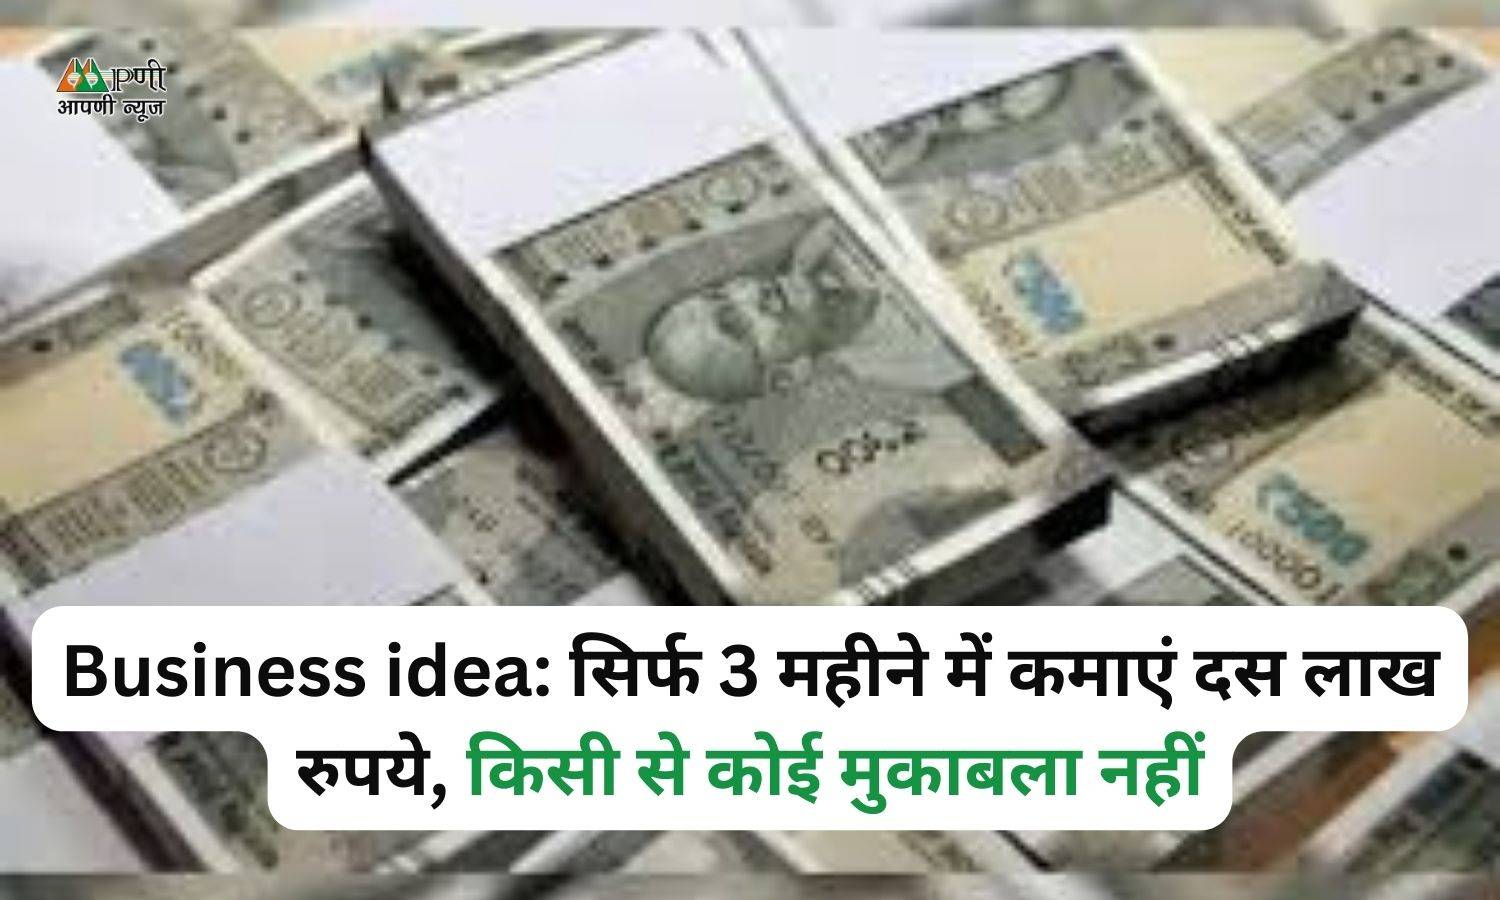 Business idea: सिर्फ 3 महीने में कमाएं दस लाख रुपये, किसी से कोई मुकाबला नहीं